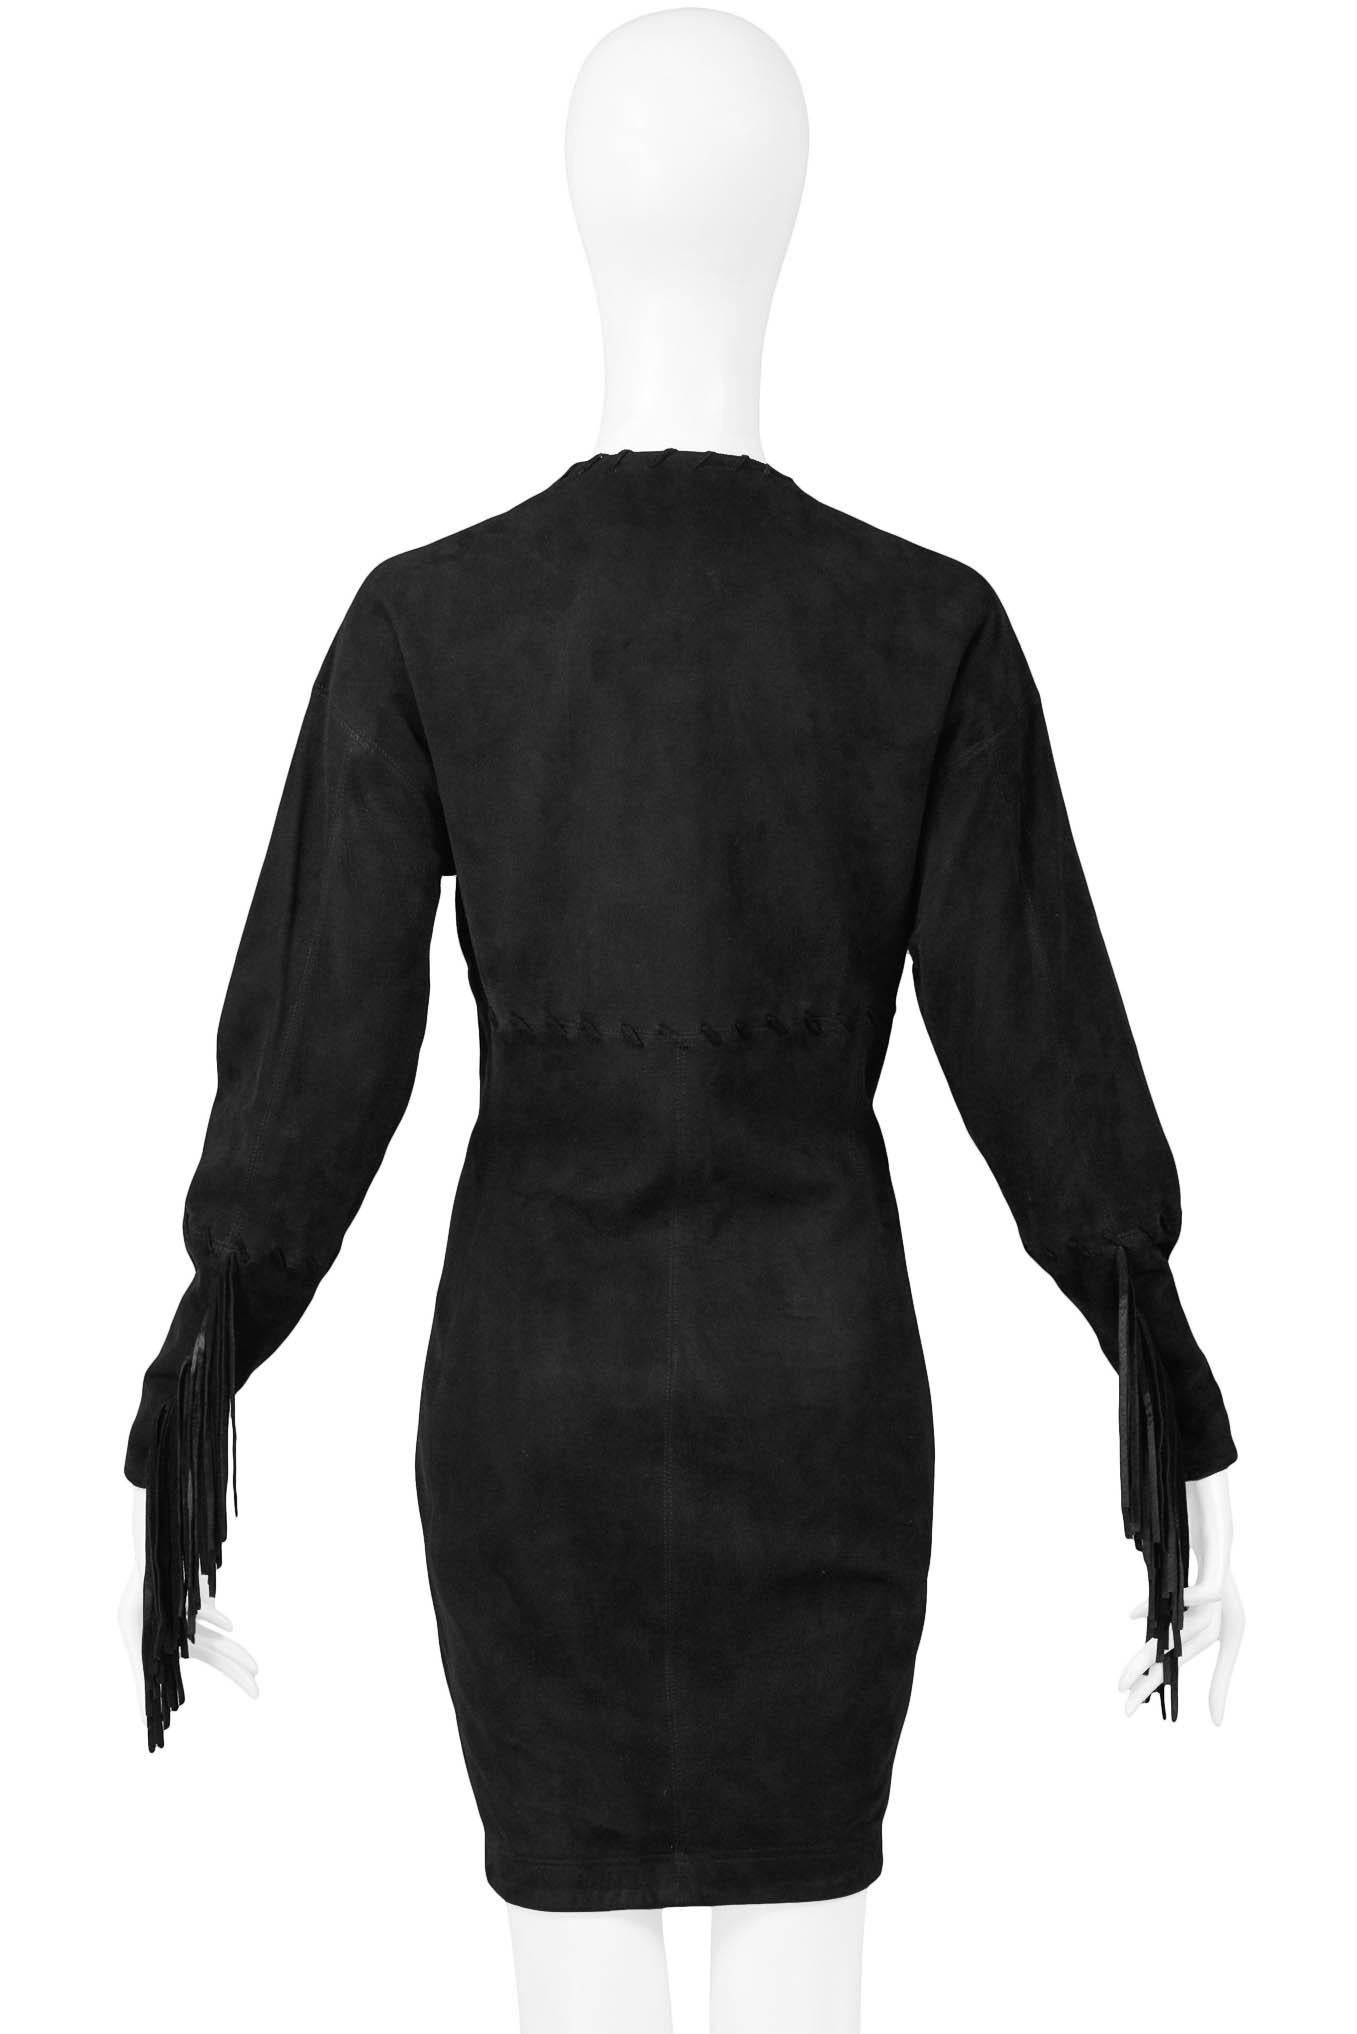 Issac Mizrahi - Robe en daim et cuir noir 1989 Pour femmes en vente